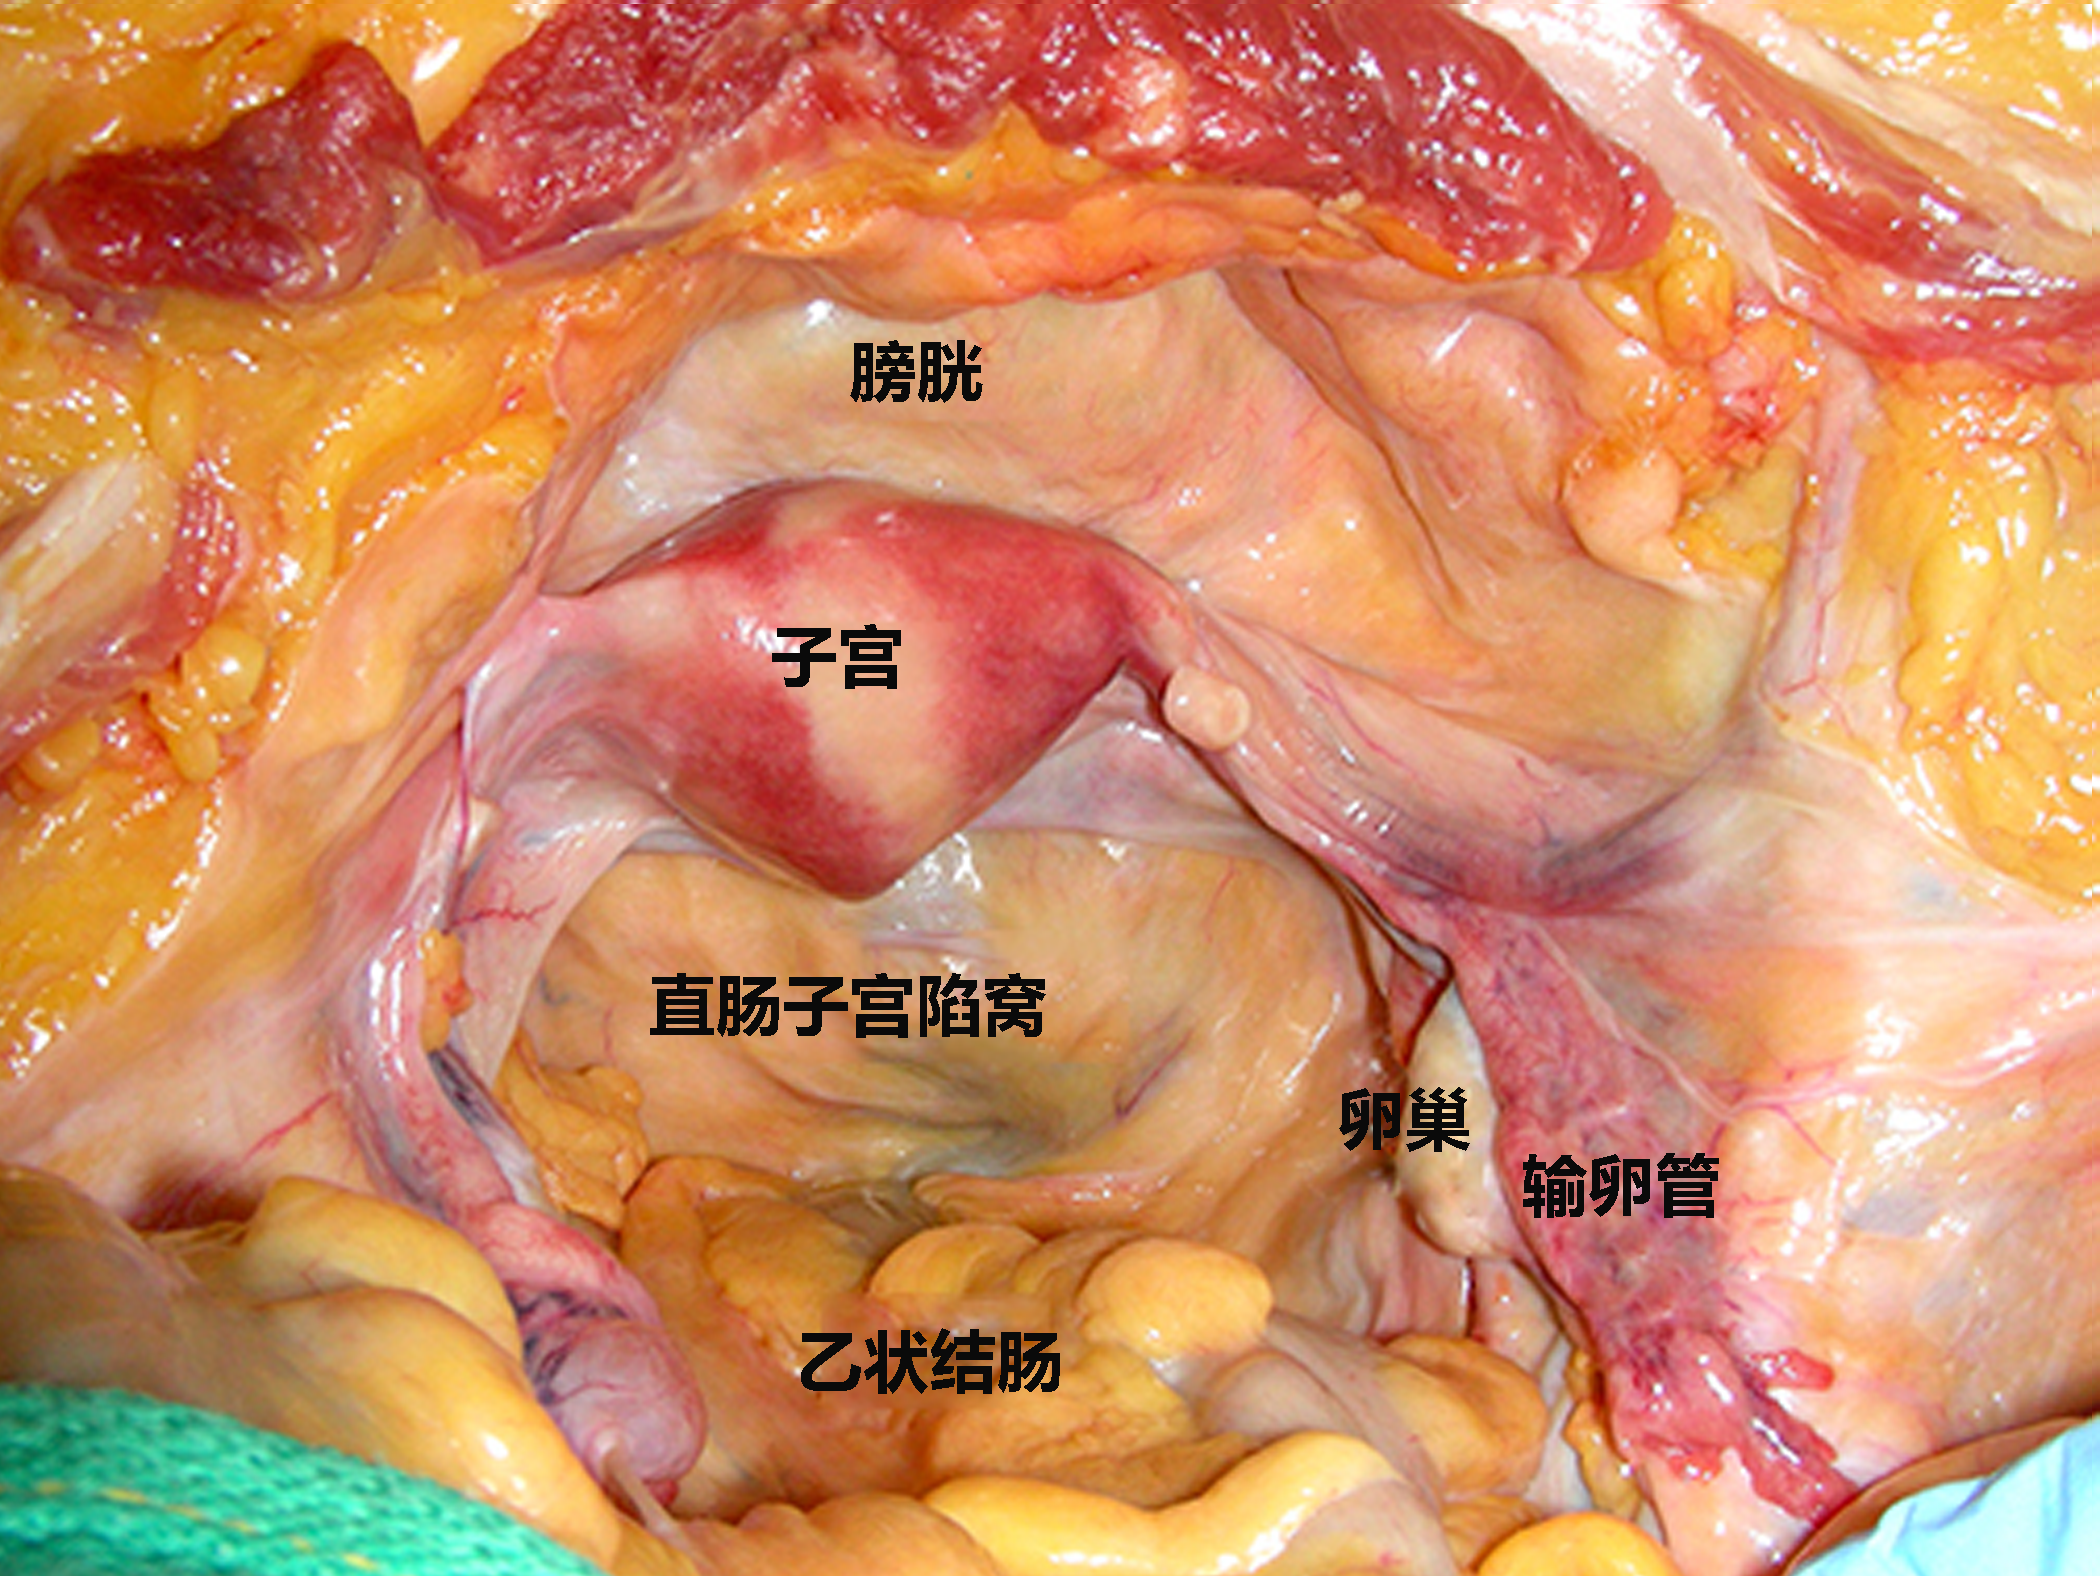 子宫解剖图 立体图图片